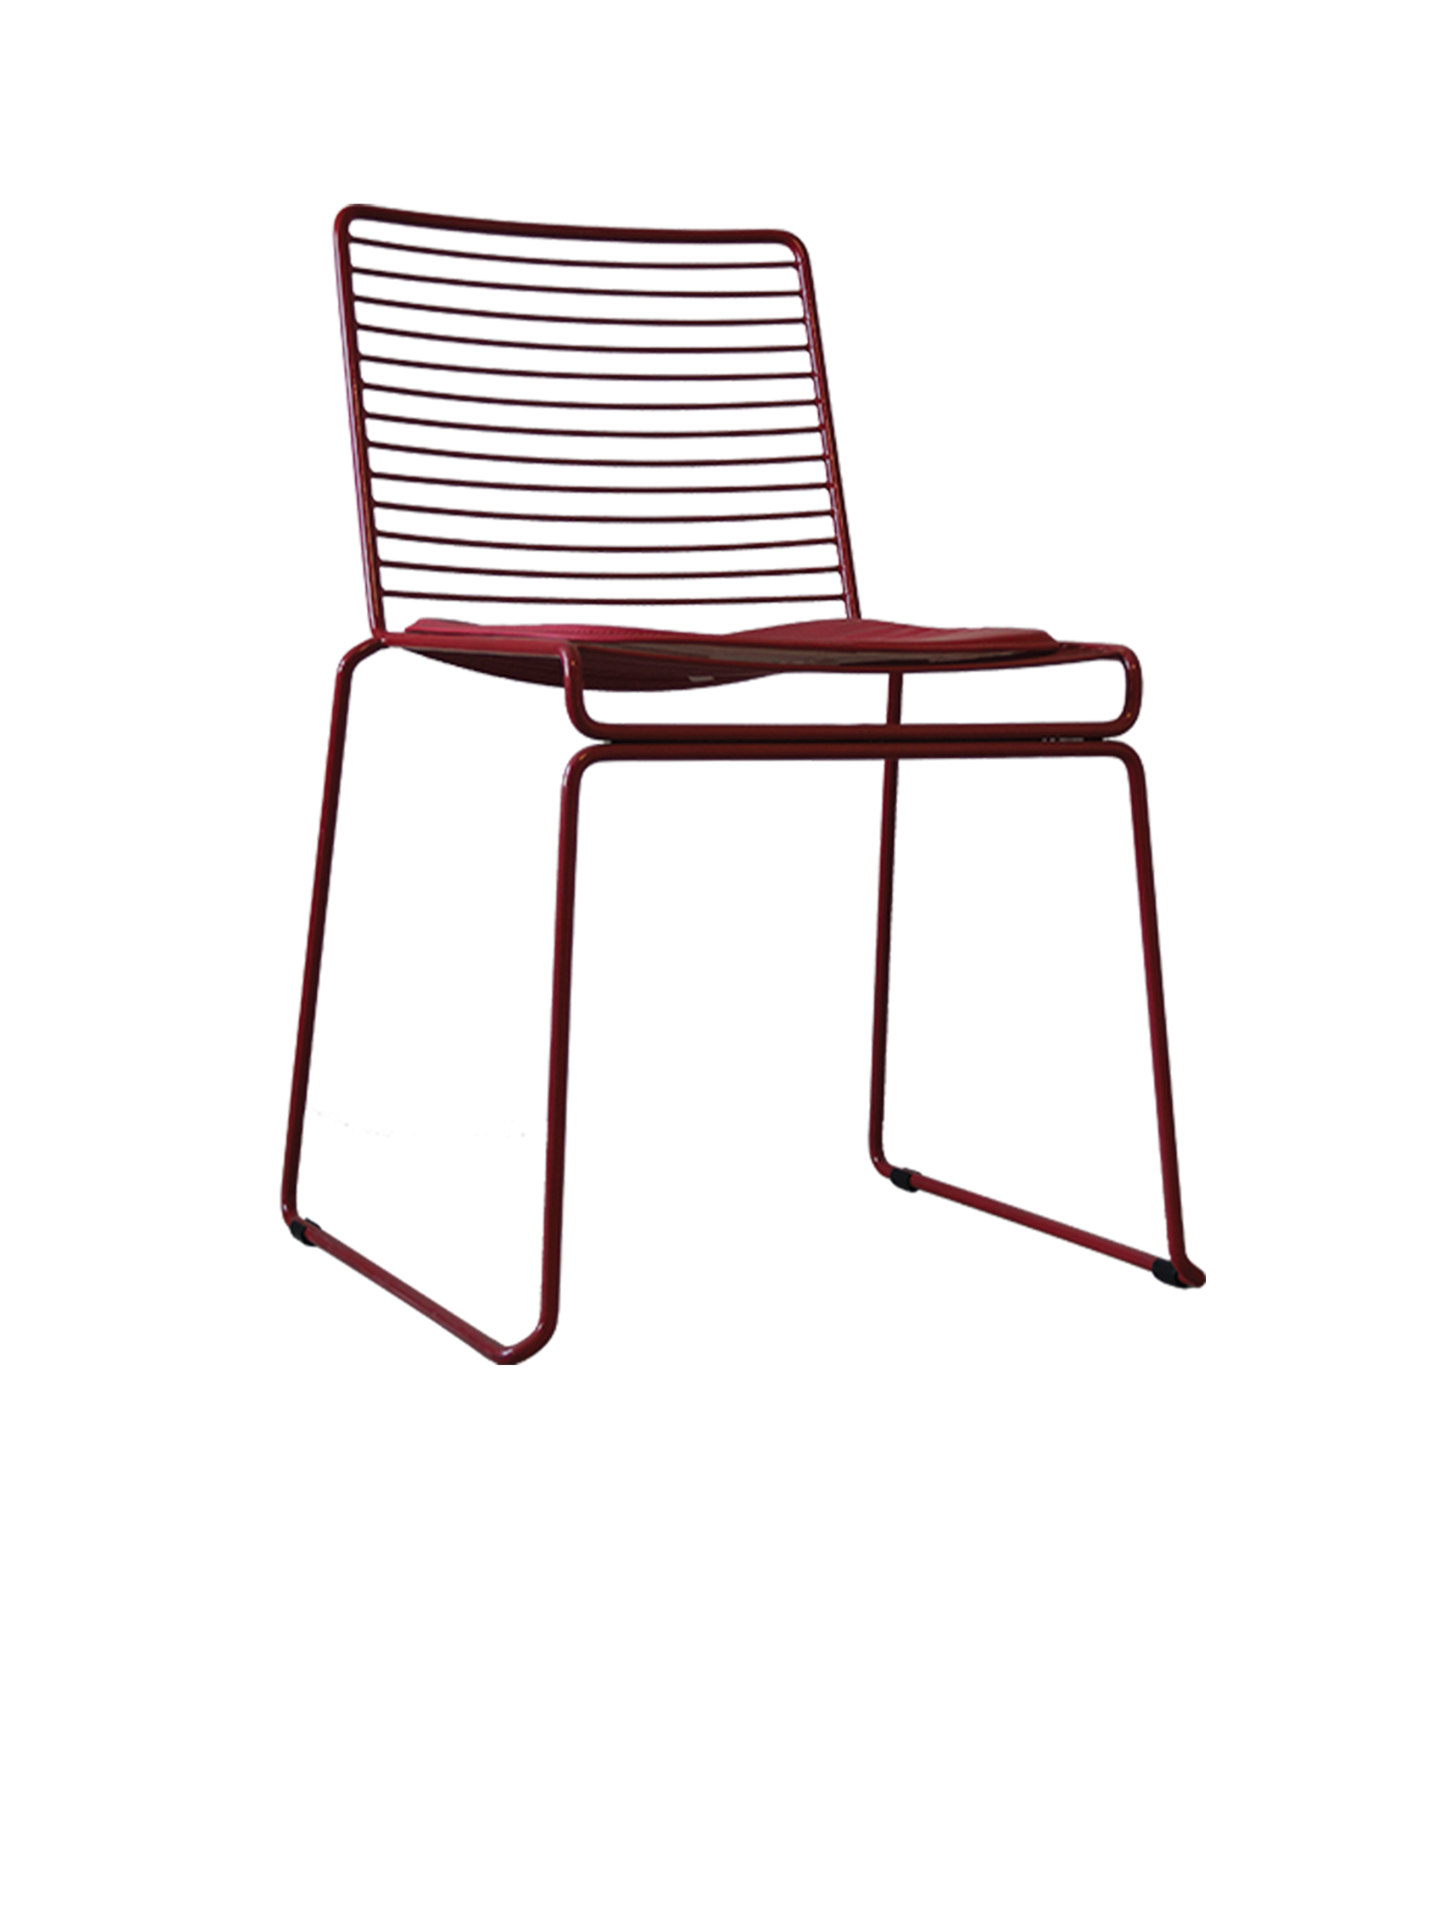 Chair 5007A